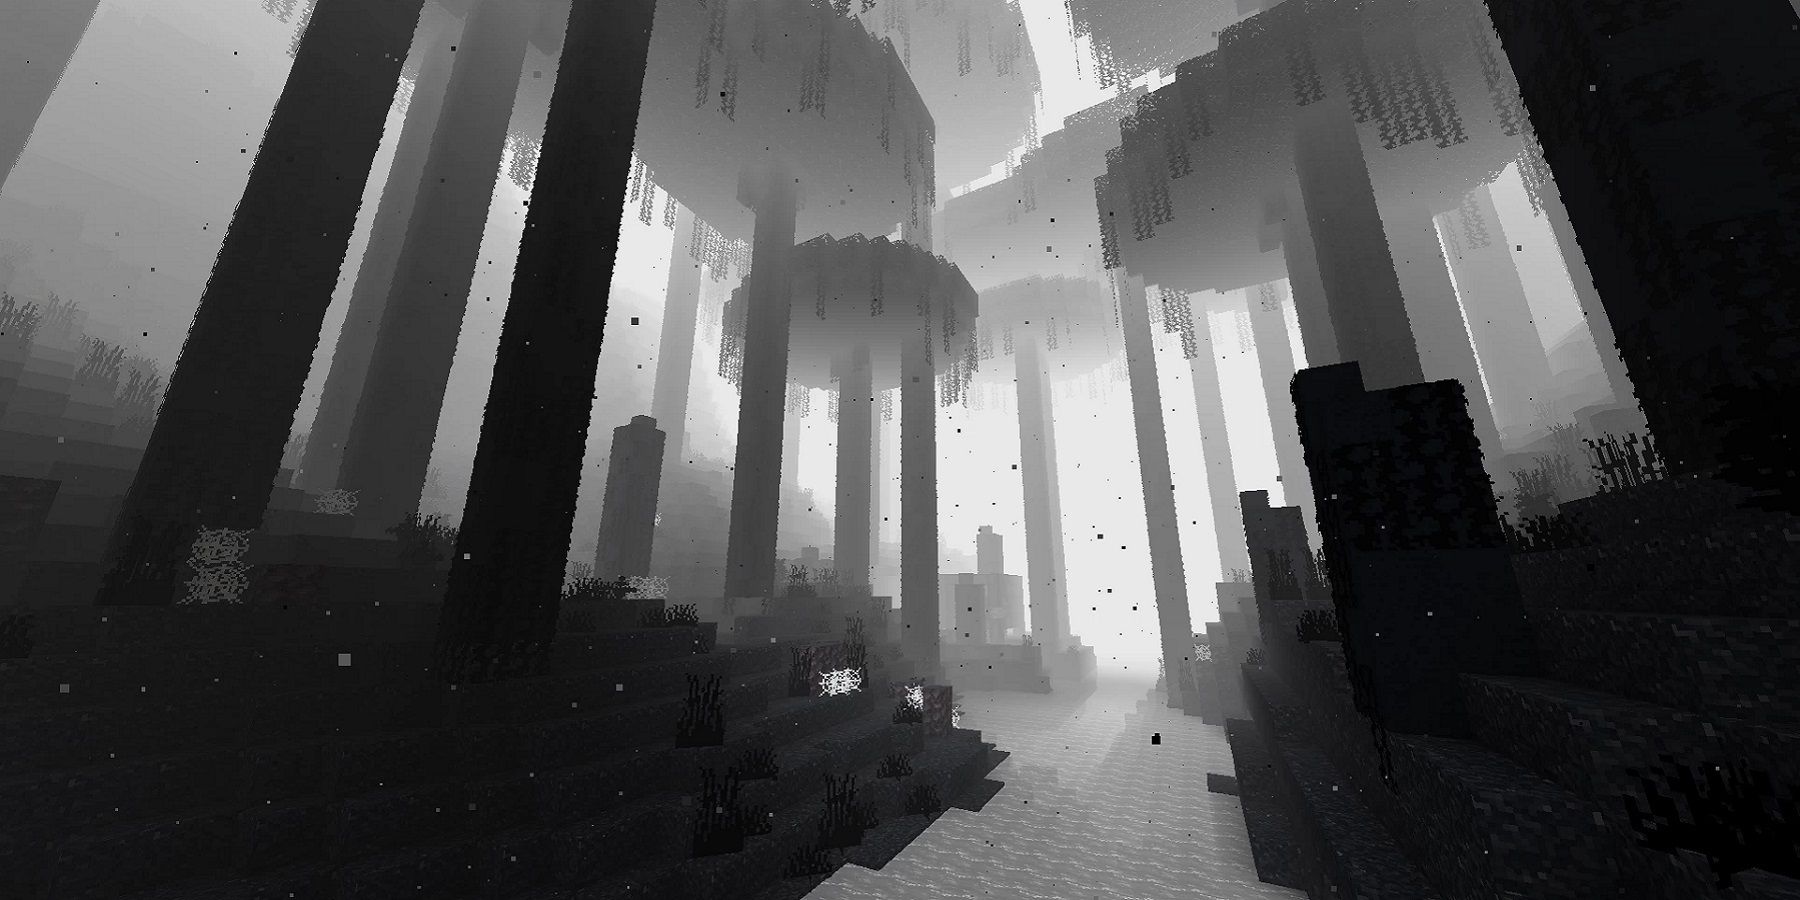 Скриншот из Minecraft, показывающий, что игра имеет визуальные эффекты, которые делают ее похожей на инди-игру Limbo.